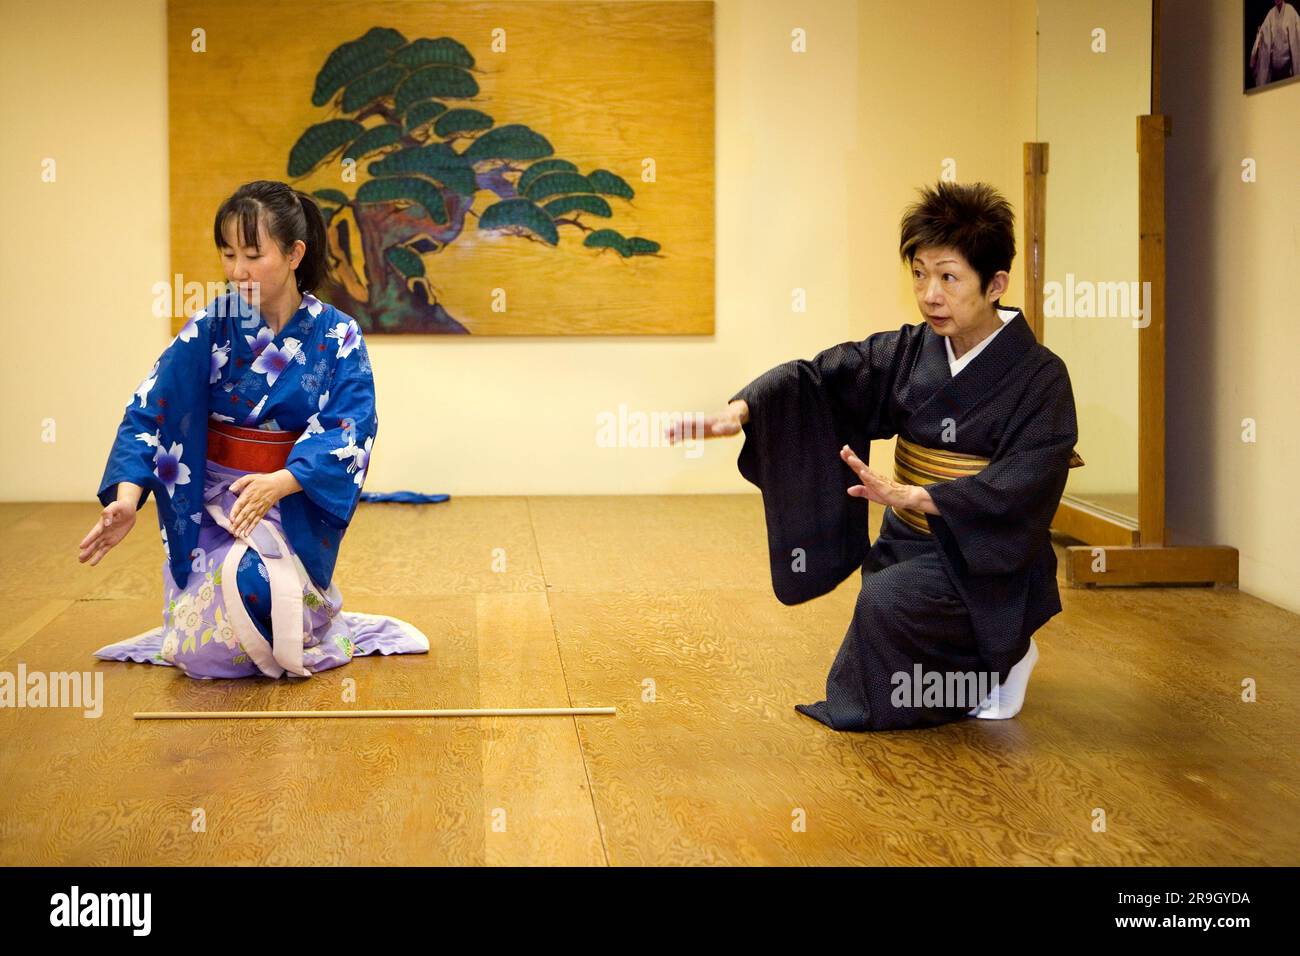 Gli studenti imparano la danza popolare giapponese dall'insegnante Foto Stock